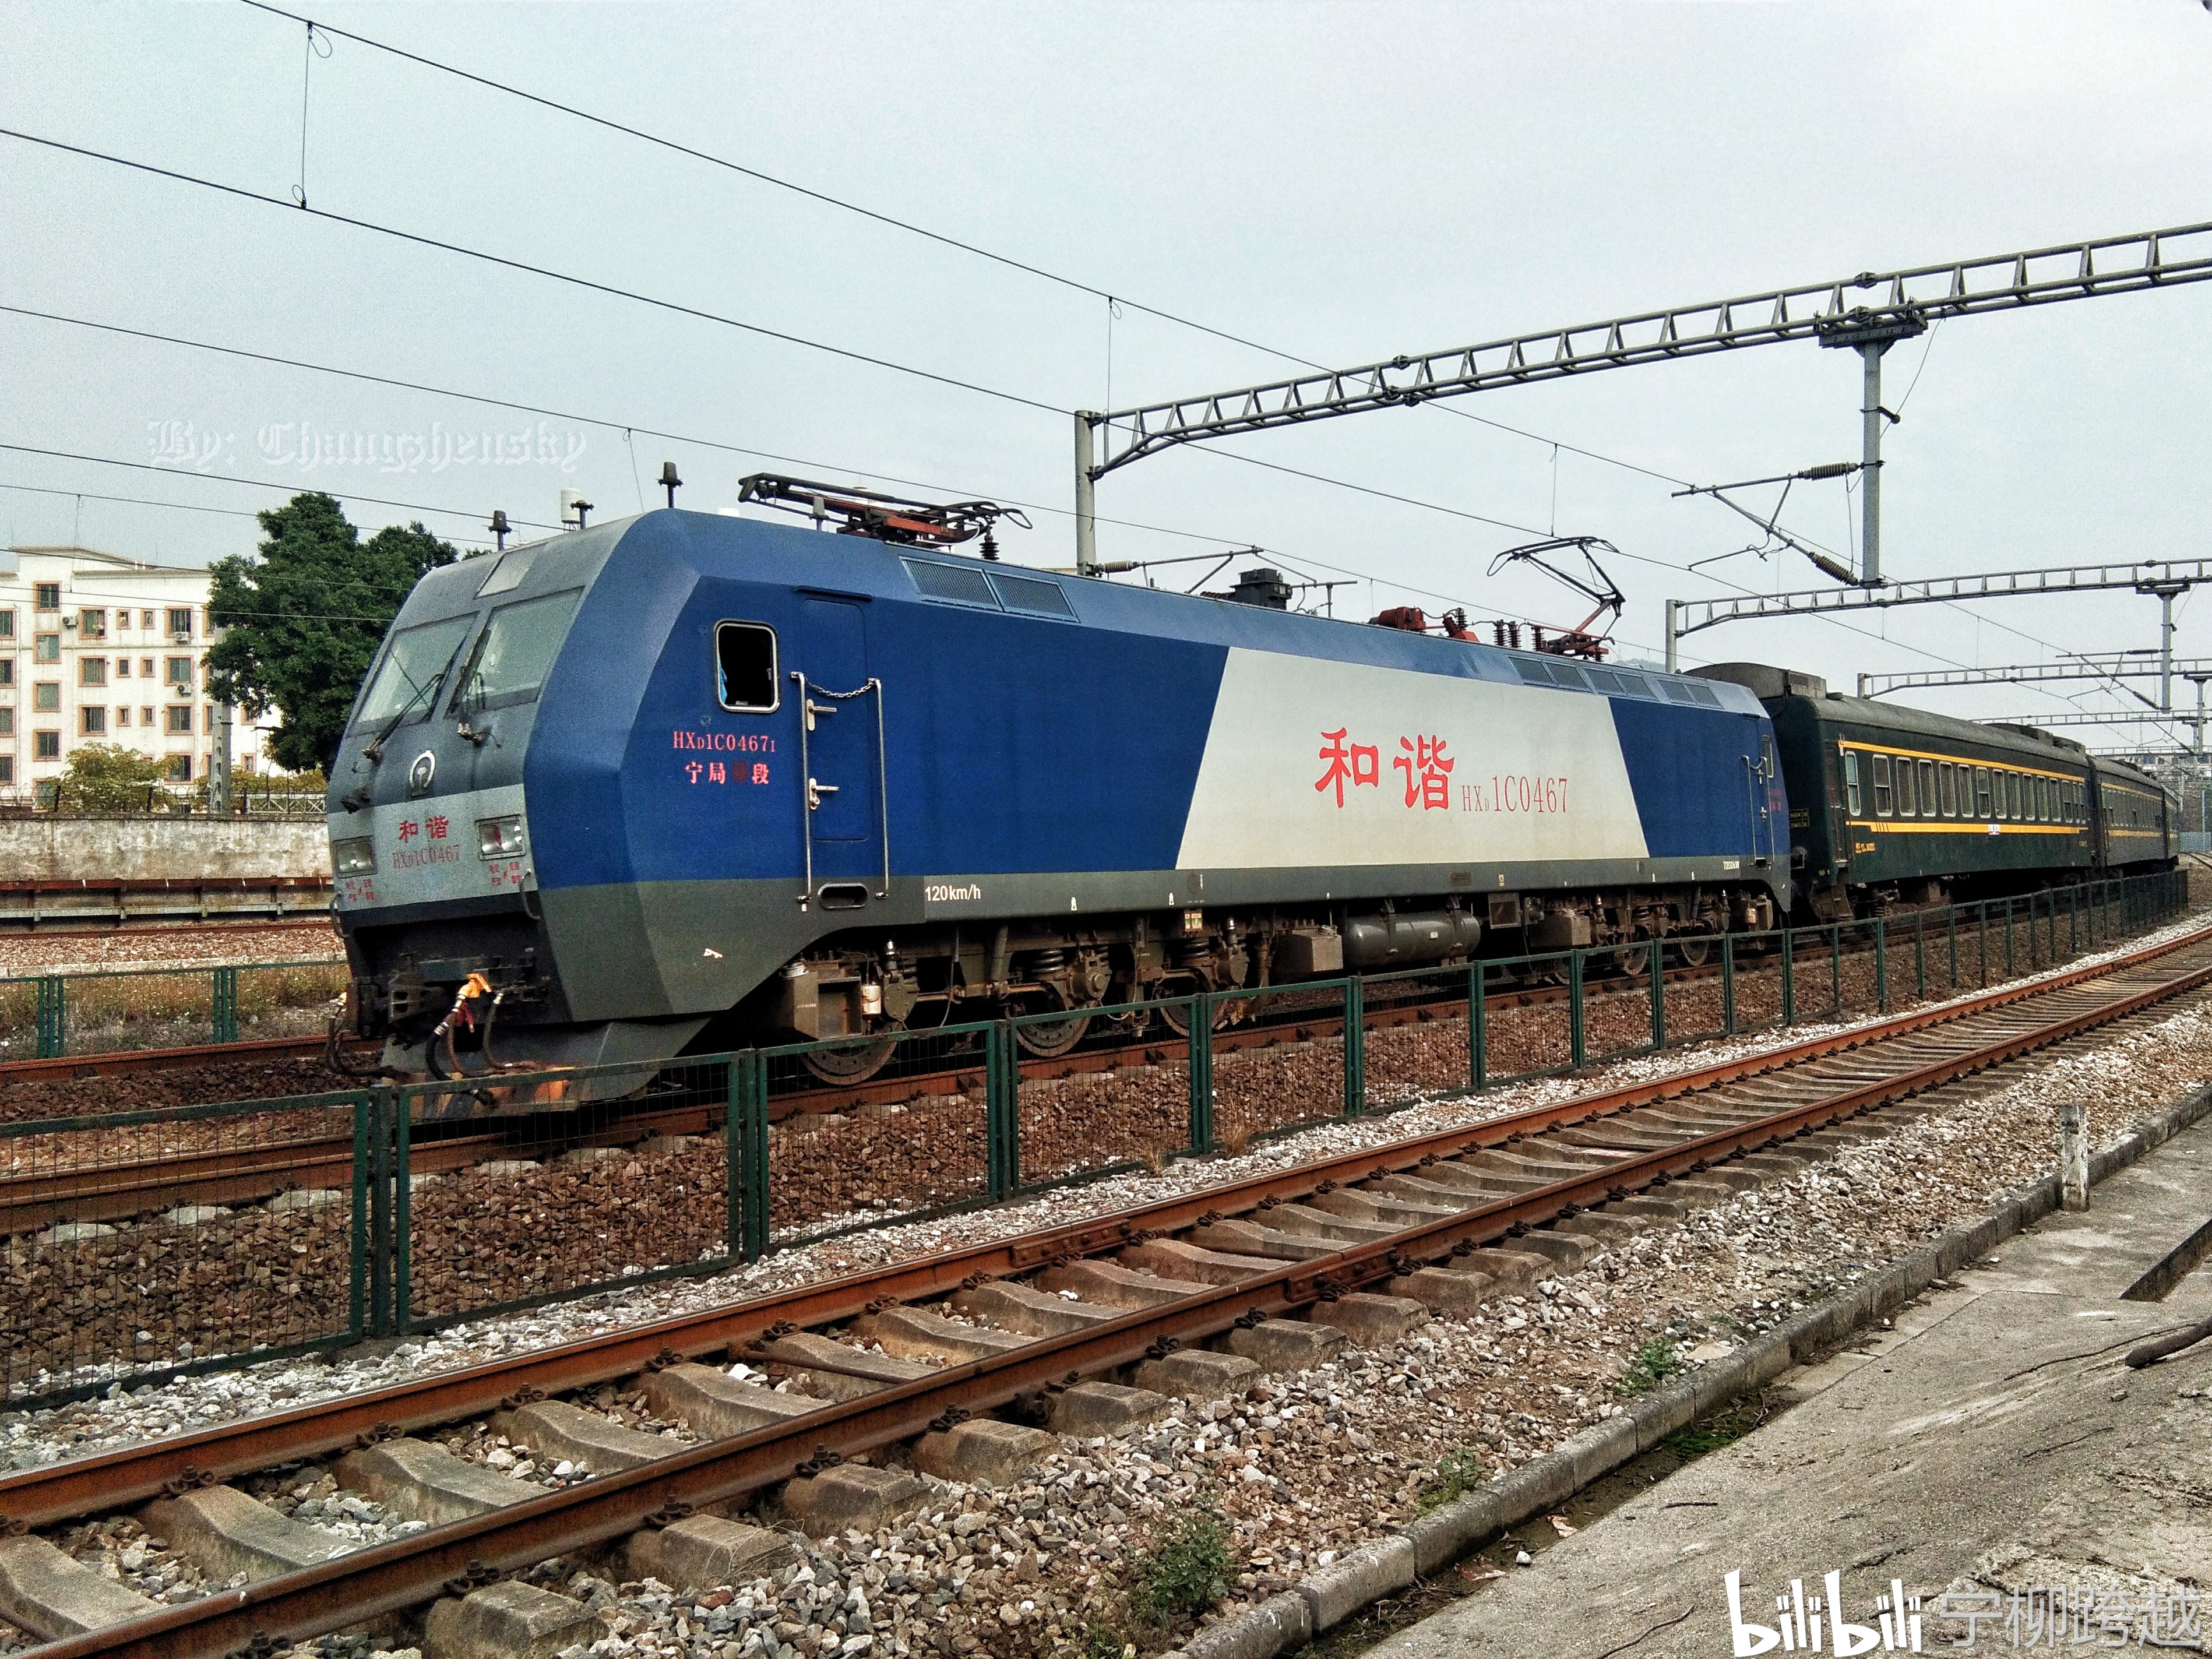 纪事一趟春节前的临时旅客列车难得一见的货运电力机车本务